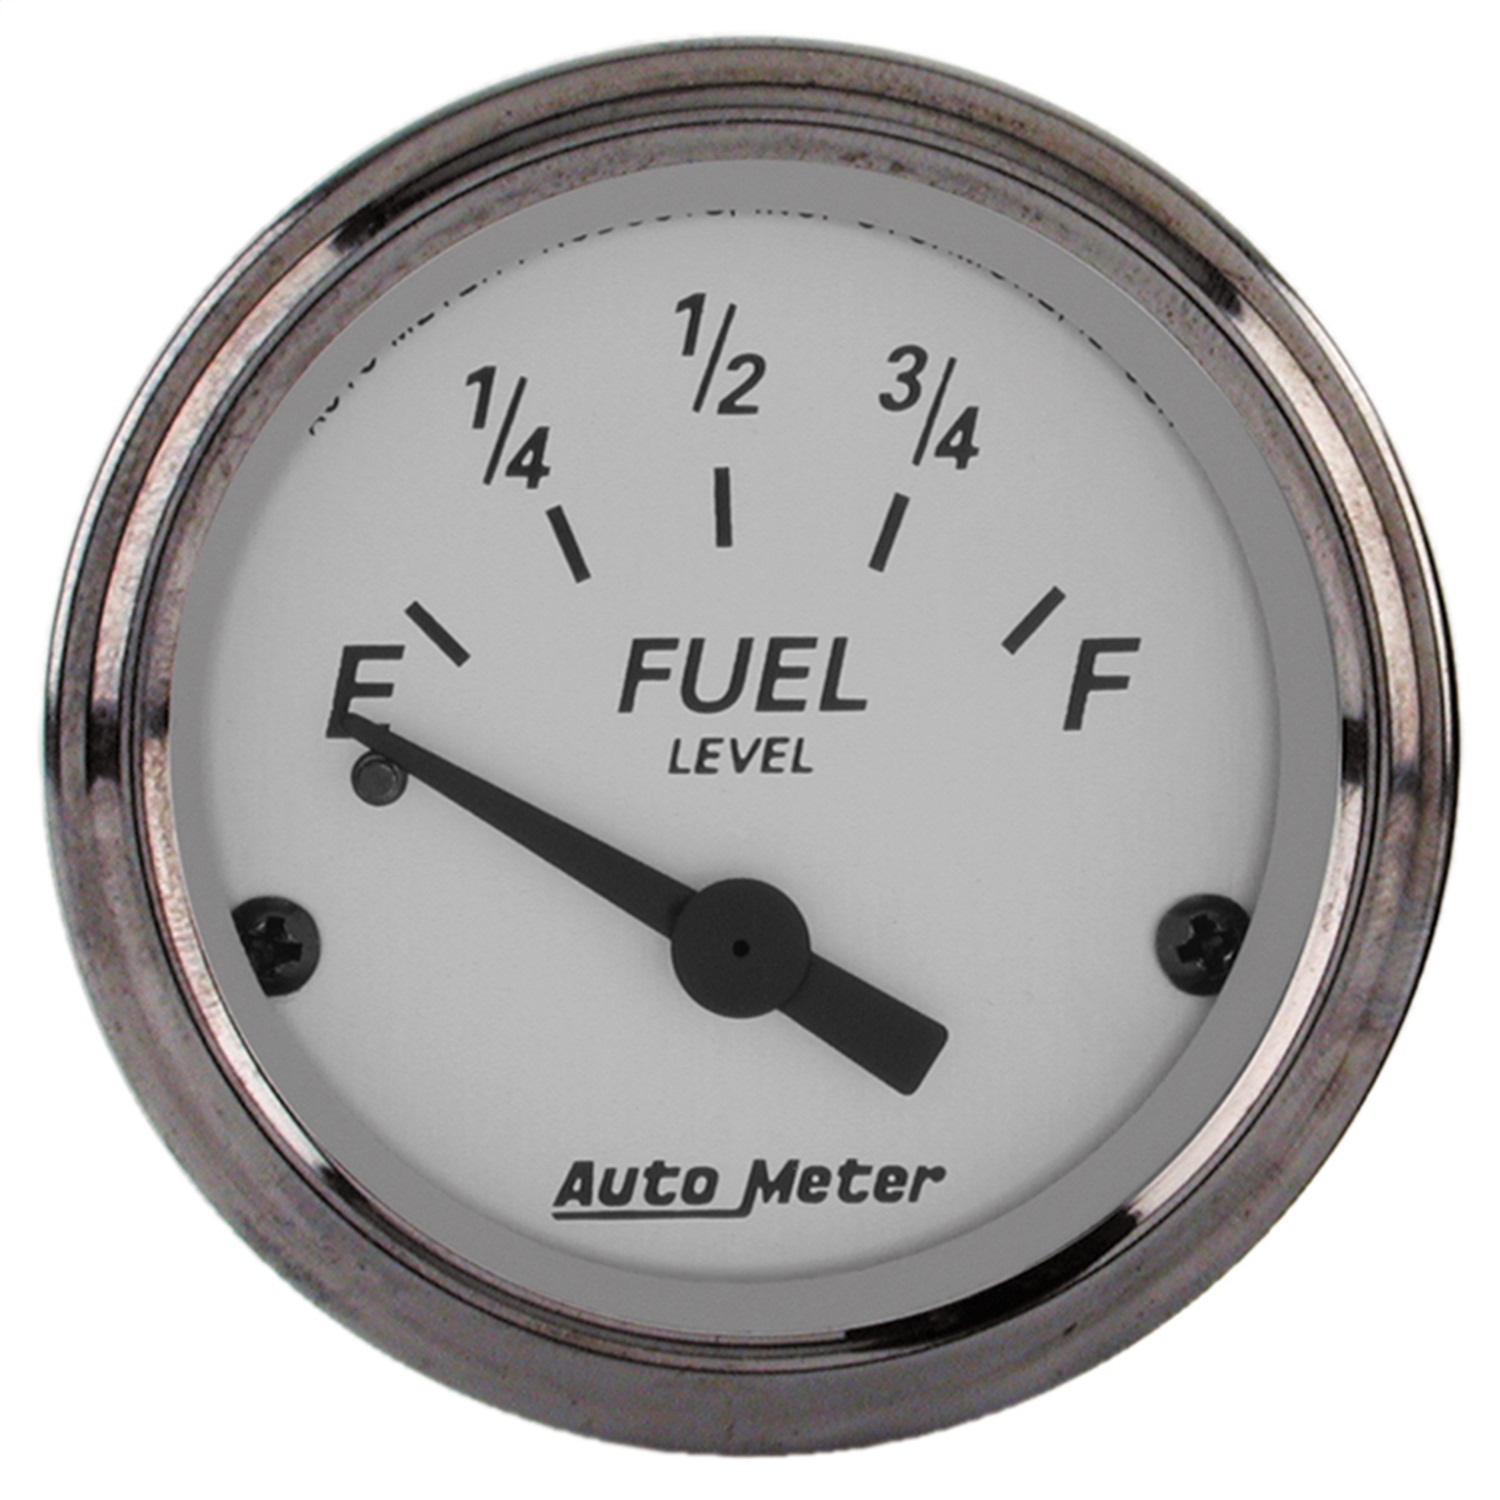 Auto Meter Auto Meter 1907 American Platinum; Electric Fuel Level Gauge